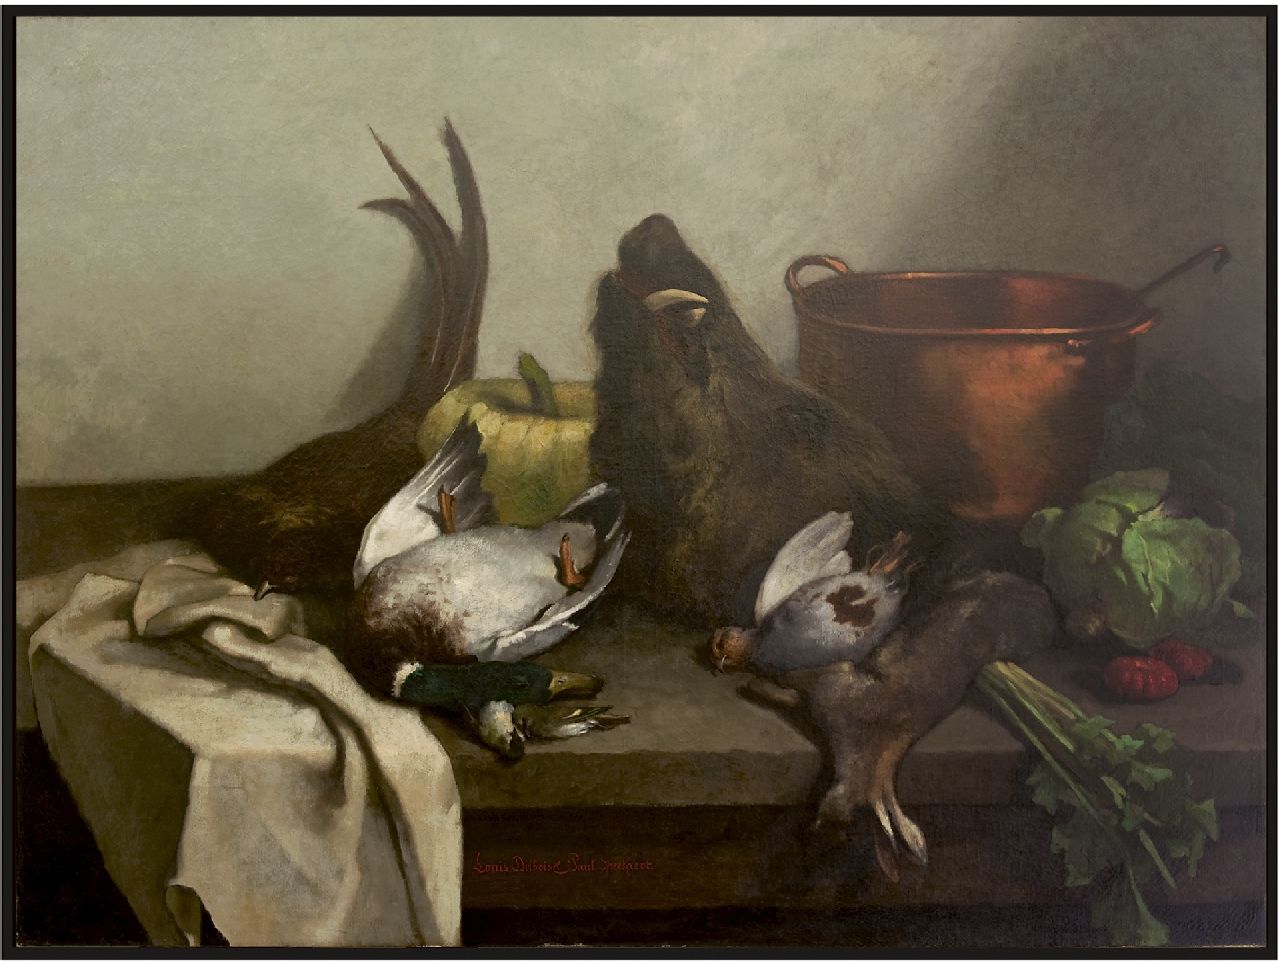 Dubois/Speekaert L./L.  | Louis/Léopold Dubois/Speekaert | Schilderijen te koop aangeboden | Stilleven met gevogelte, olieverf op doek 105,5 x 141,0 cm, gesigneerd middenonder door beide kunstenaars